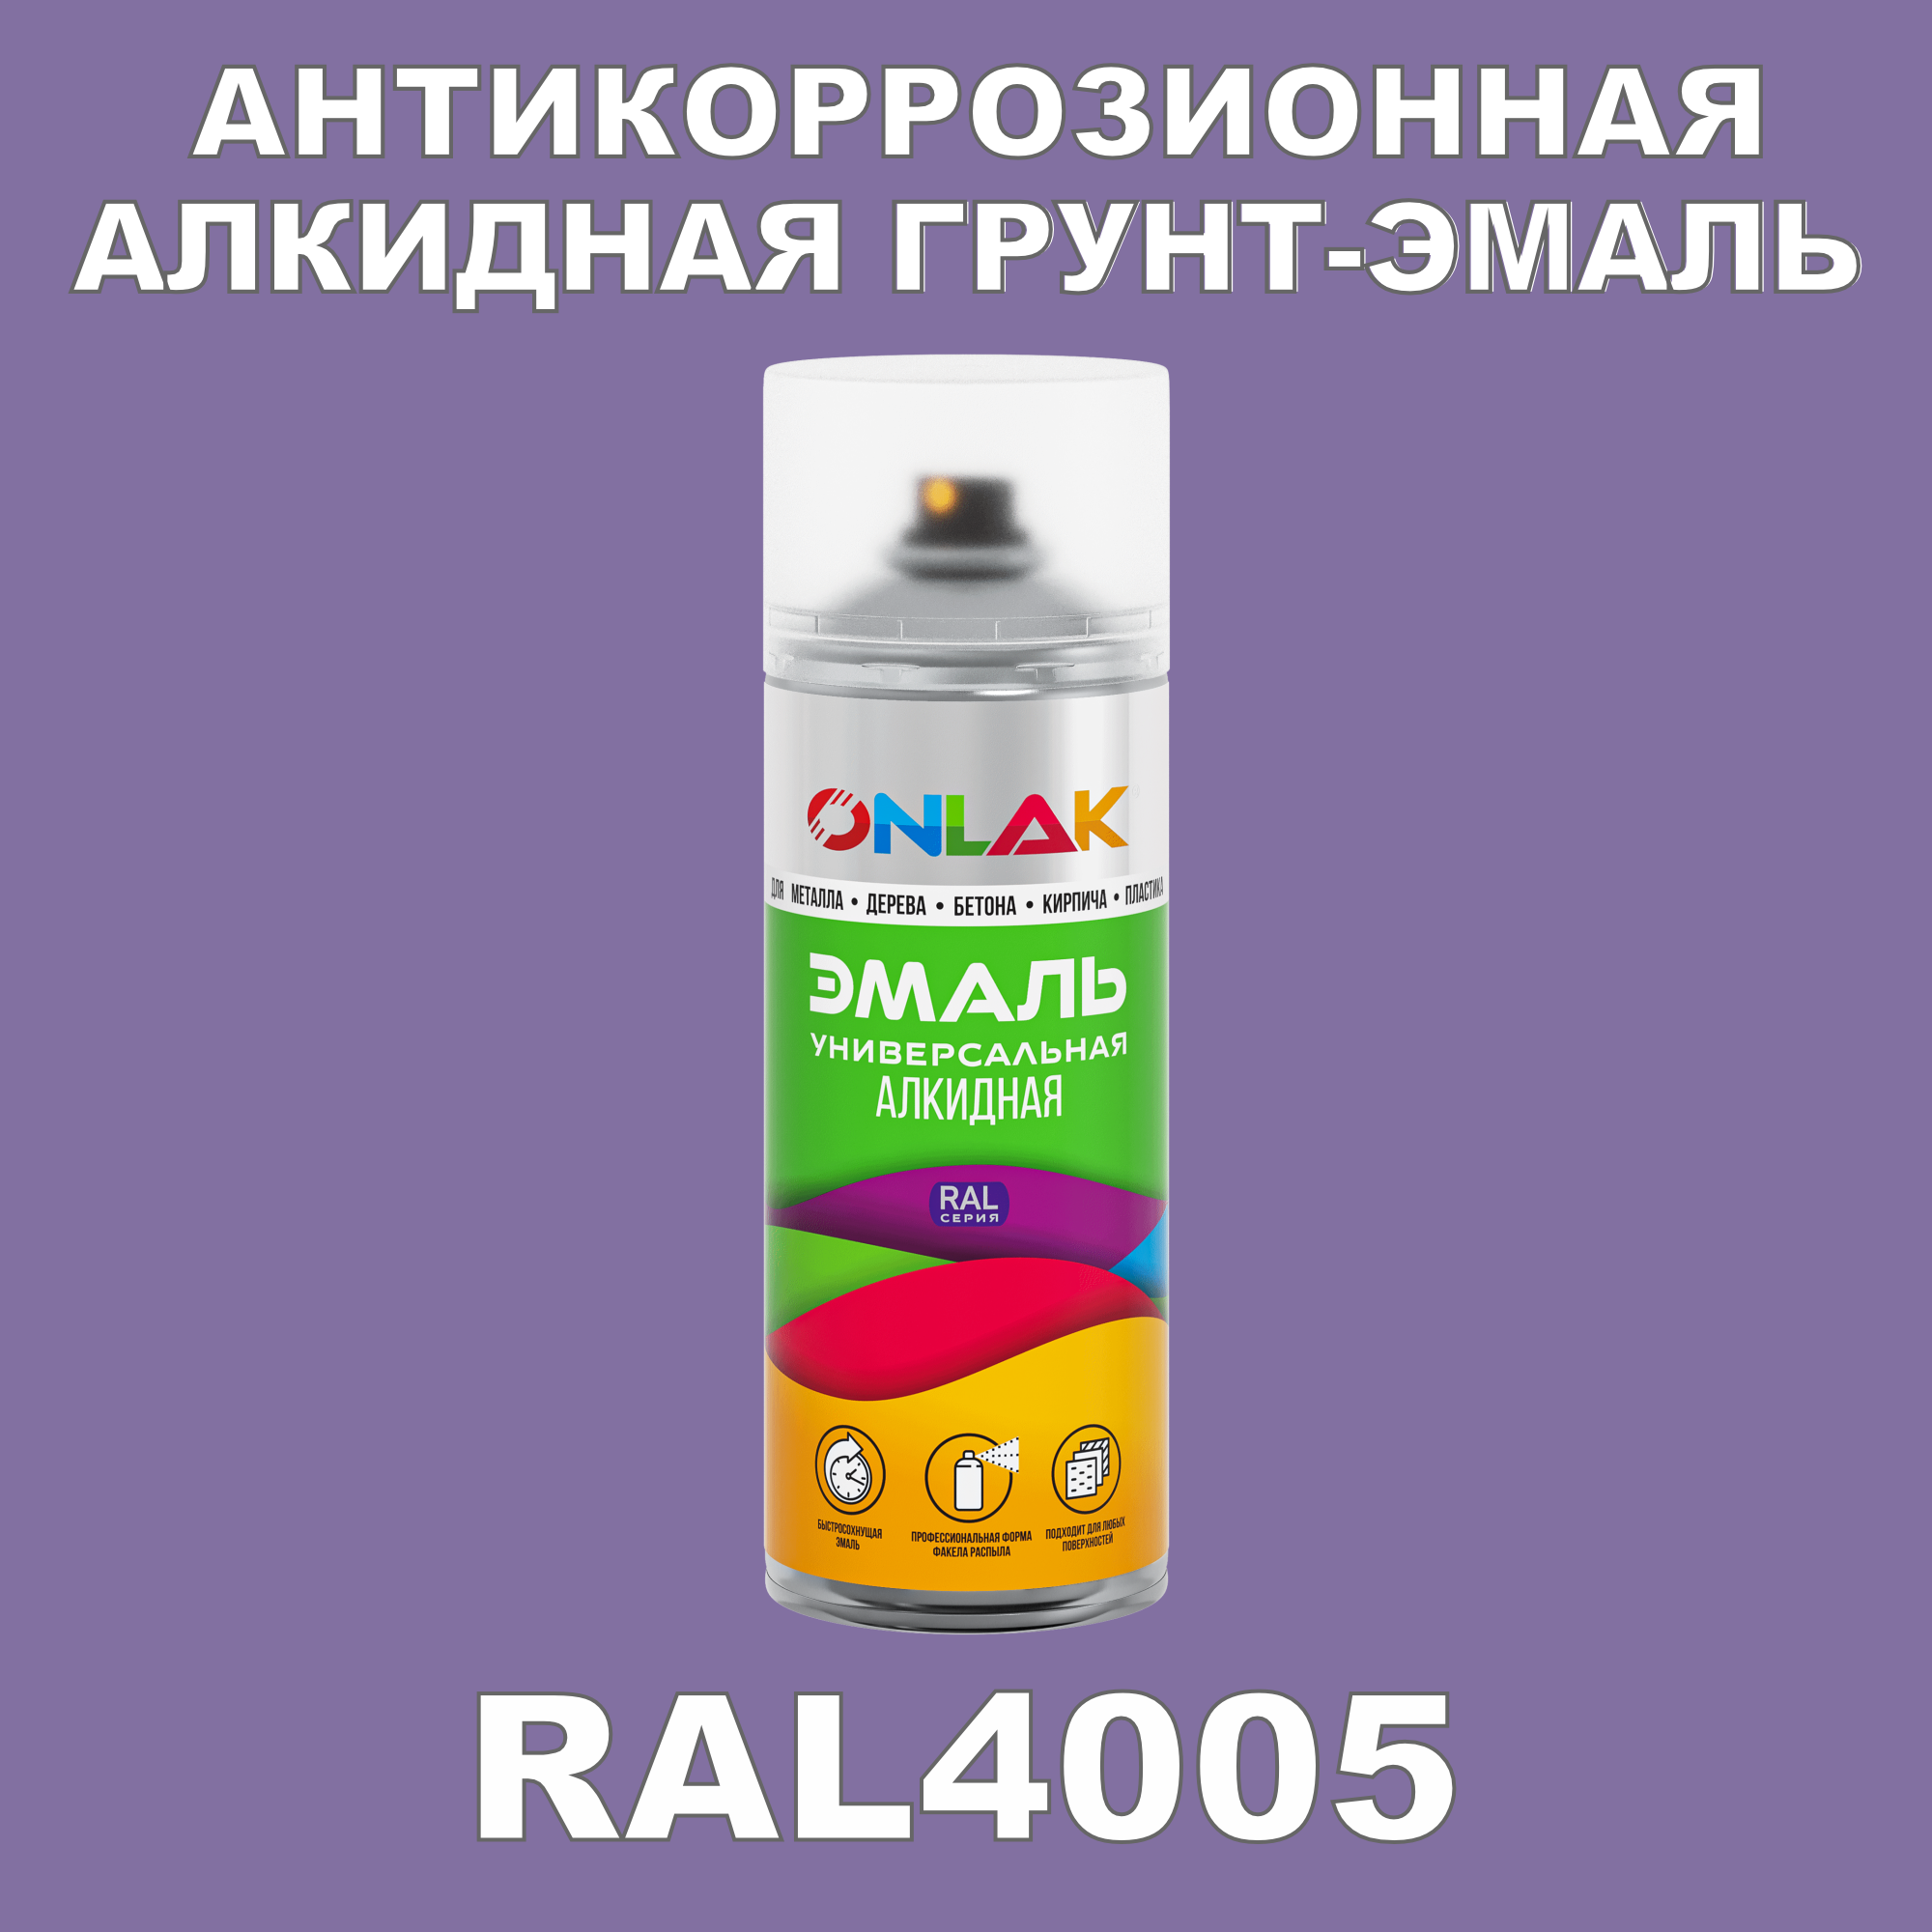 Антикоррозионная грунт-эмаль ONLAK RAL 4005,фиолетовый,662 мл рюкзак детский на молнии 3 наружных кармана цвет фиолетовый